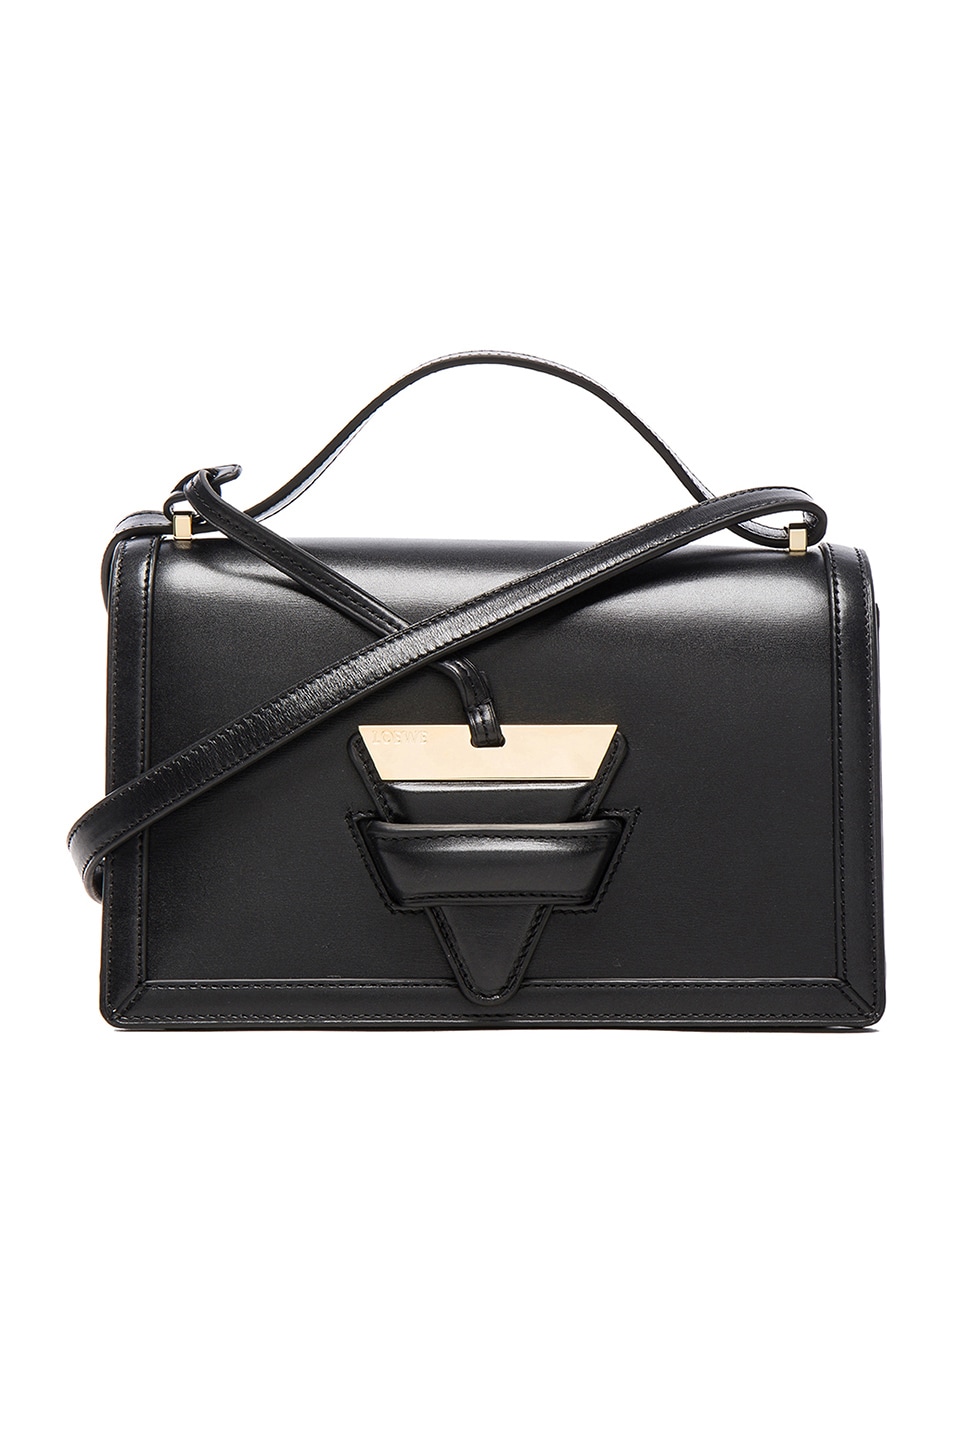 LOEWE Barcelona 24 Box Leather Shoulder Bag, Black | ModeSens